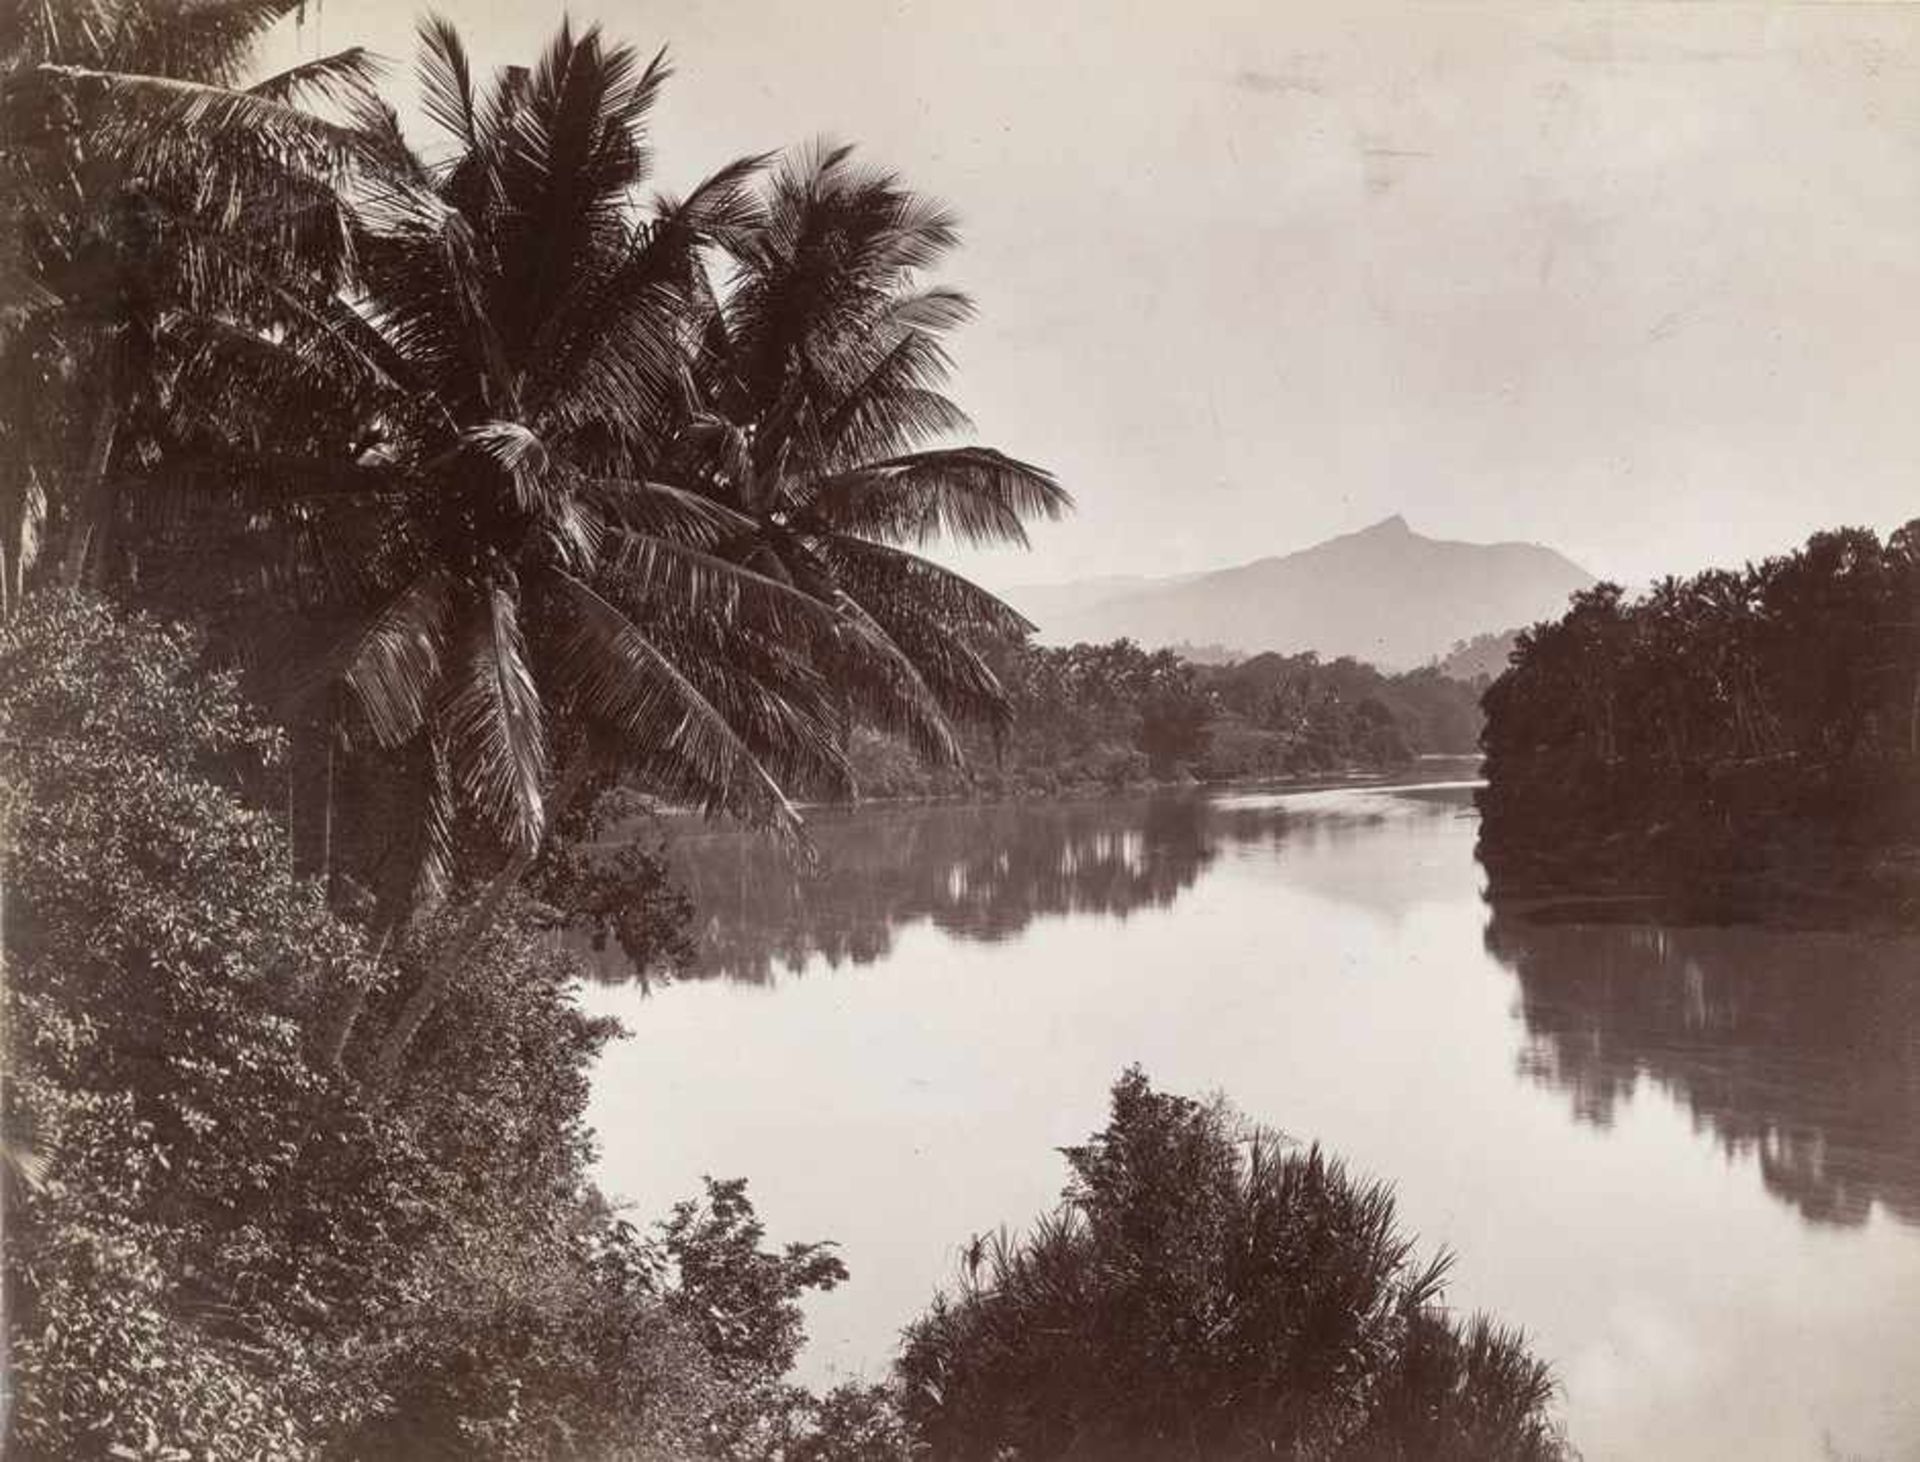 Ceylon: Rubber trees, palms, landscapes, plantations and villagesPhotographer: Scowen, Platé and